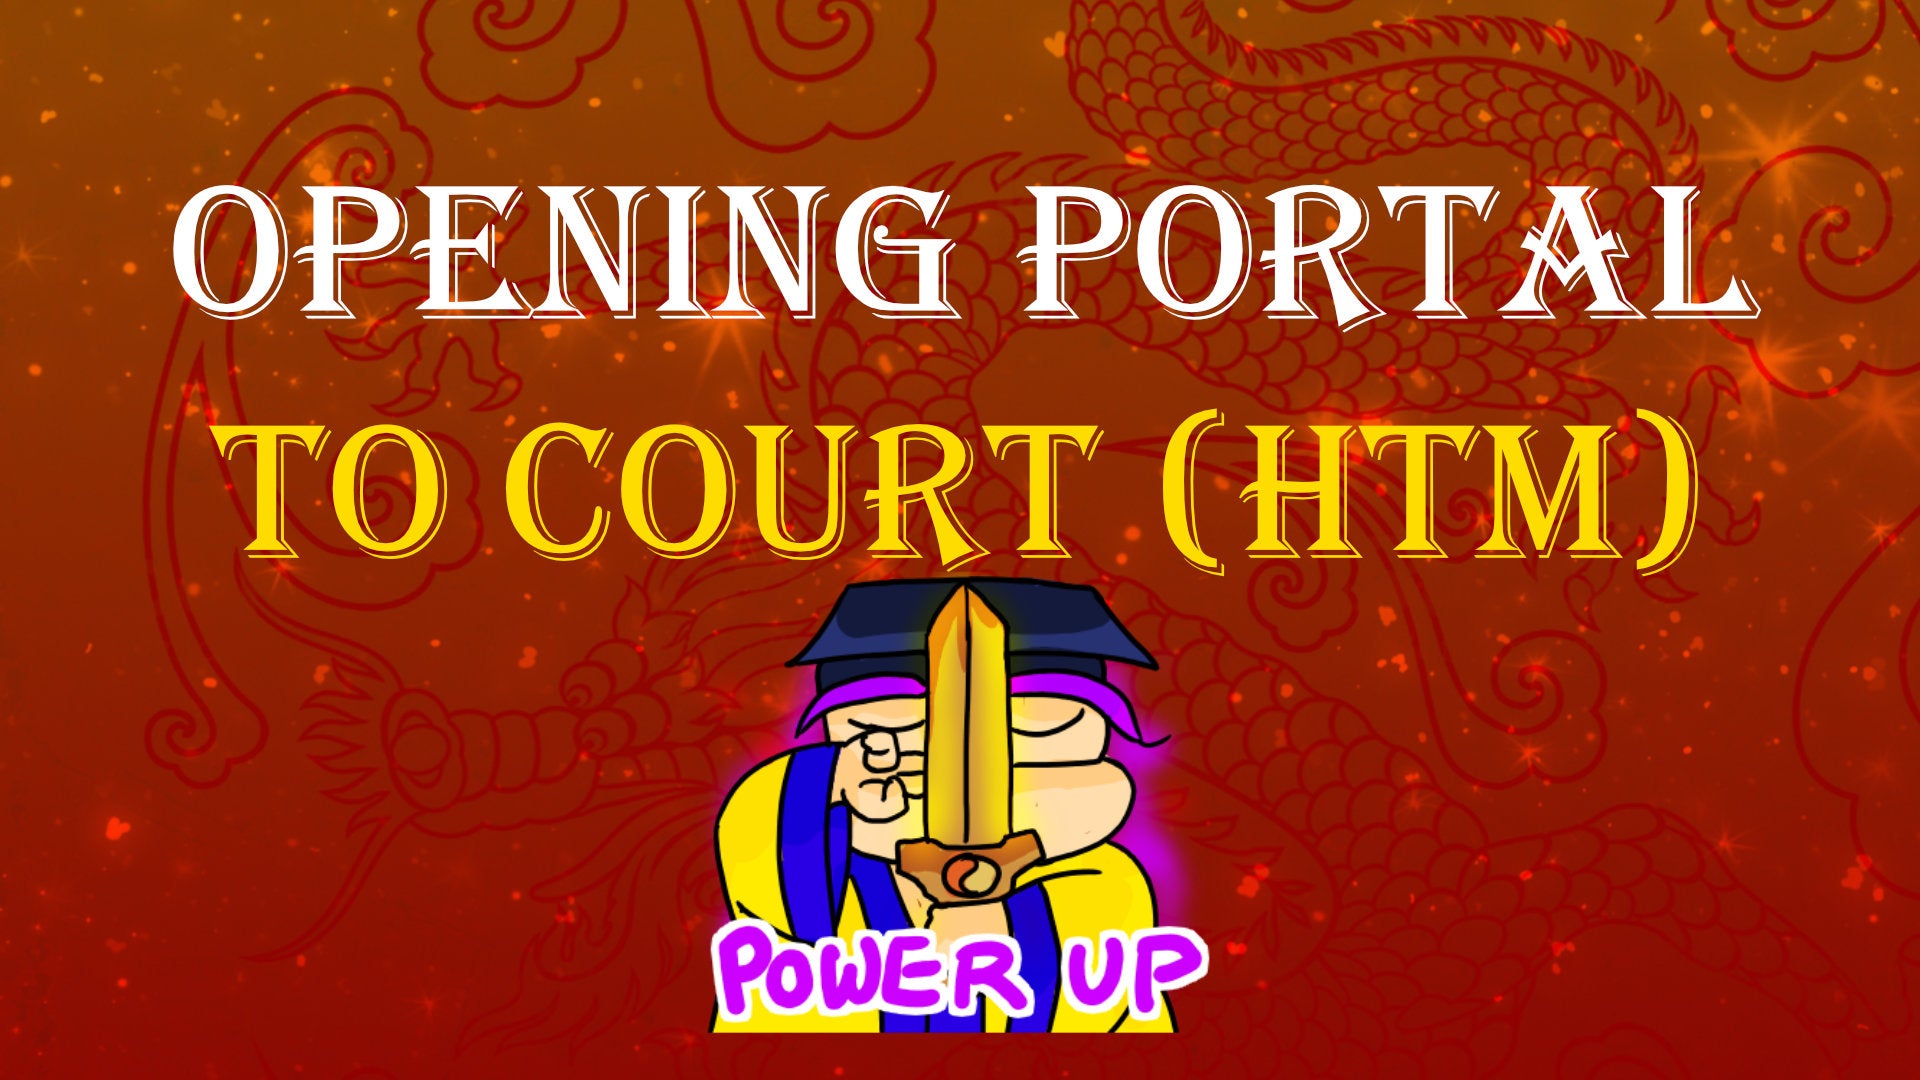 
          Portal to the Religious Court
        